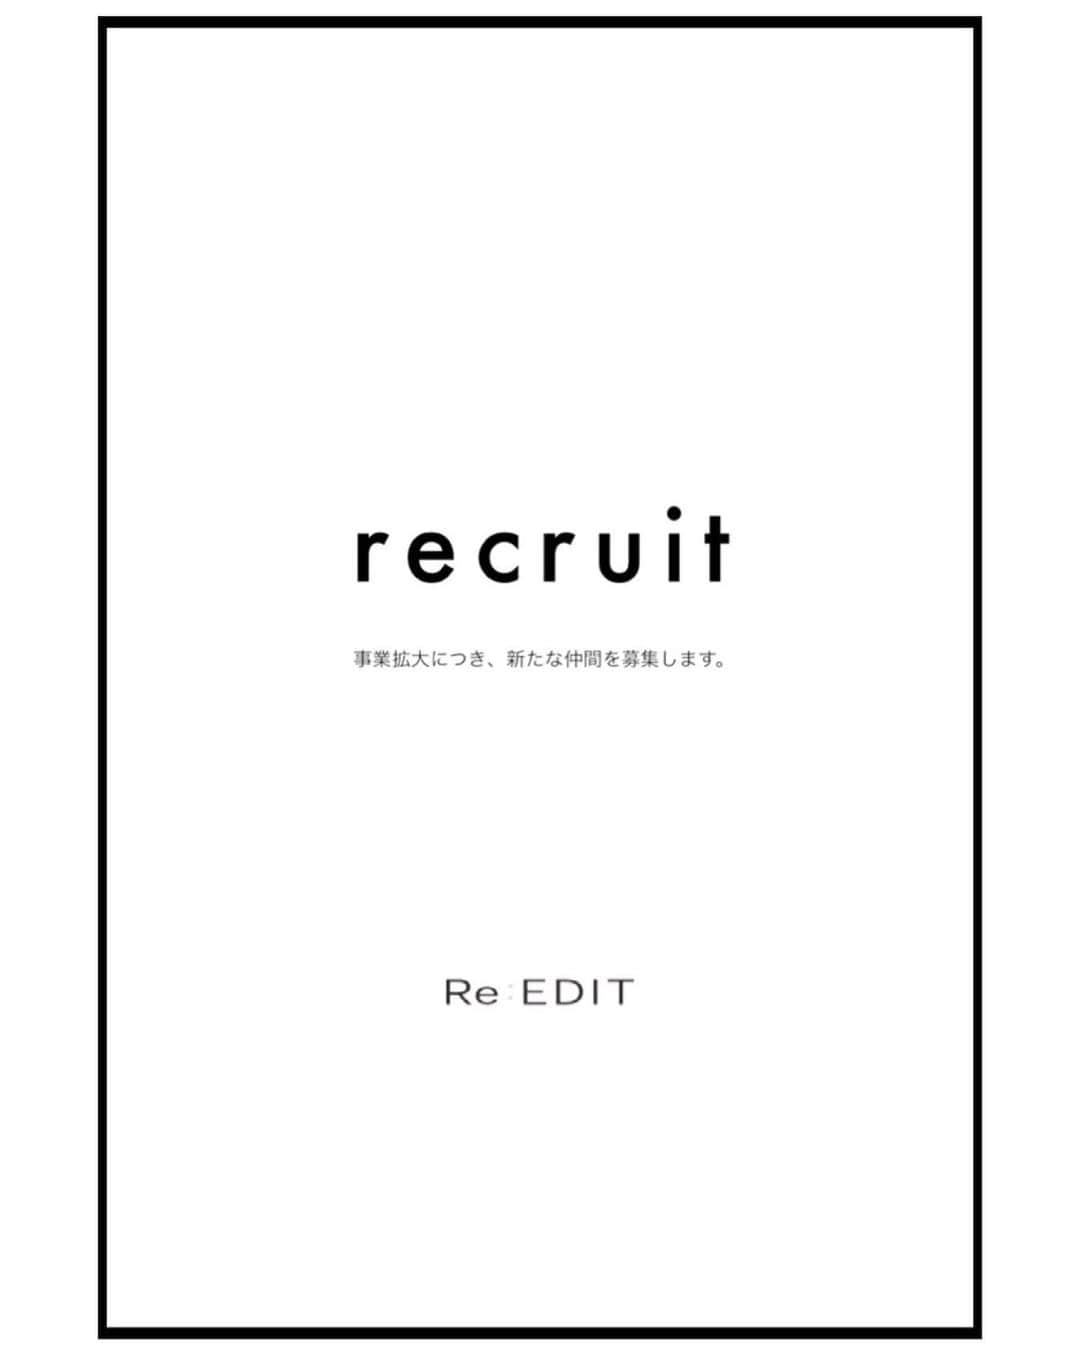 Re:EDIT OFFICIALさんのインスタグラム写真 - (Re:EDIT OFFICIALInstagram)「． 《recruit》 いつもリエディをご愛顧いただきまして 誠にありがとうございます。  事業拡大につき一緒に働いてくださるスタッフを 募集しております。 詳細につきましては下記コーポレートサイトより ご確認くださいませ。  ▶️http://www.neographic.jp/recruit/career.html  ■応募方法 「中途（キャリア）採用エントリー」ページより応募  ■選考方法 書類選考・個人面接  ＿＿＿＿＿＿＿＿＿＿＿＿＿＿＿＿＿＿  ▼応募職種  ■WEBデザイナー  自分のデザインがもたらす成果をダイレクトに実感可能  ファッションに対する情熱を持った社員が イキイキと活躍する社内は、 WEBデザイナーとして大きな刺激となるはず。 ＿＿＿＿＿＿＿＿＿＿＿＿＿＿＿＿＿  ■WEBディレクター（店舗運営管理／店長候補）  弊社が展開する自社ブランドの店舗運営全般。  売上トップランクのECサイトを自由に任せてもらえることは、あなたの成長にもプラスに。  自分の企画・デザインしたキャンペーン画面が 一日数千万円の売上につながるなど、 手応えも感じられる仕事です。 ＿＿＿＿＿＿＿＿＿＿＿＿＿＿＿＿＿  ■フロントエンドエンジニア（店舗運営管理）  自社運営サイトのページコーディングだけに留まらず 目的・目標達成のために最適な技術・構造は何かを考え  デザイナーやディレクターの相談役となり 「やりたいことを実現する」ための技術的な フォローや制作を行っていただきます。 ＿＿＿＿＿＿＿＿＿＿＿＿＿＿＿＿＿  ■カスタマーサポート（コンシェルジュデスク）  自分たちもブランドの発展に関わっているという充実感。  カスタマーサポートスタッフがお客様に対して 一番心がけていることは、より分かりやすい説明を するための努力を怠らないこと。  丁寧で親切なご対応はもちろん、 サイズ感や着心地を試すための試着を繰り返したりと、 モチベーション高く働いています。  お客様と最前線で接しながらブランドの成長・発展に 貢献している充実感が味わえる仕事です。 ＿＿＿＿＿＿＿＿＿＿＿＿＿＿＿＿＿  ■商品開発／商品企画職  ファッションが好きな人が活躍＆成長できる自由な環境  20代社員が数多く活躍する当社。 しかもファッションに熱い思いを持っている人材ばかり。  そんな活気あふれる環境はもちろん、社員のやりたいことを 大切にする、積極的に手を上げる人に任せる＆挑戦させる、 社員の声を吸い上げるという社風があります。  自分らしく成長できる自由な環境は魅力！」2月26日 0時13分 - reedit_official